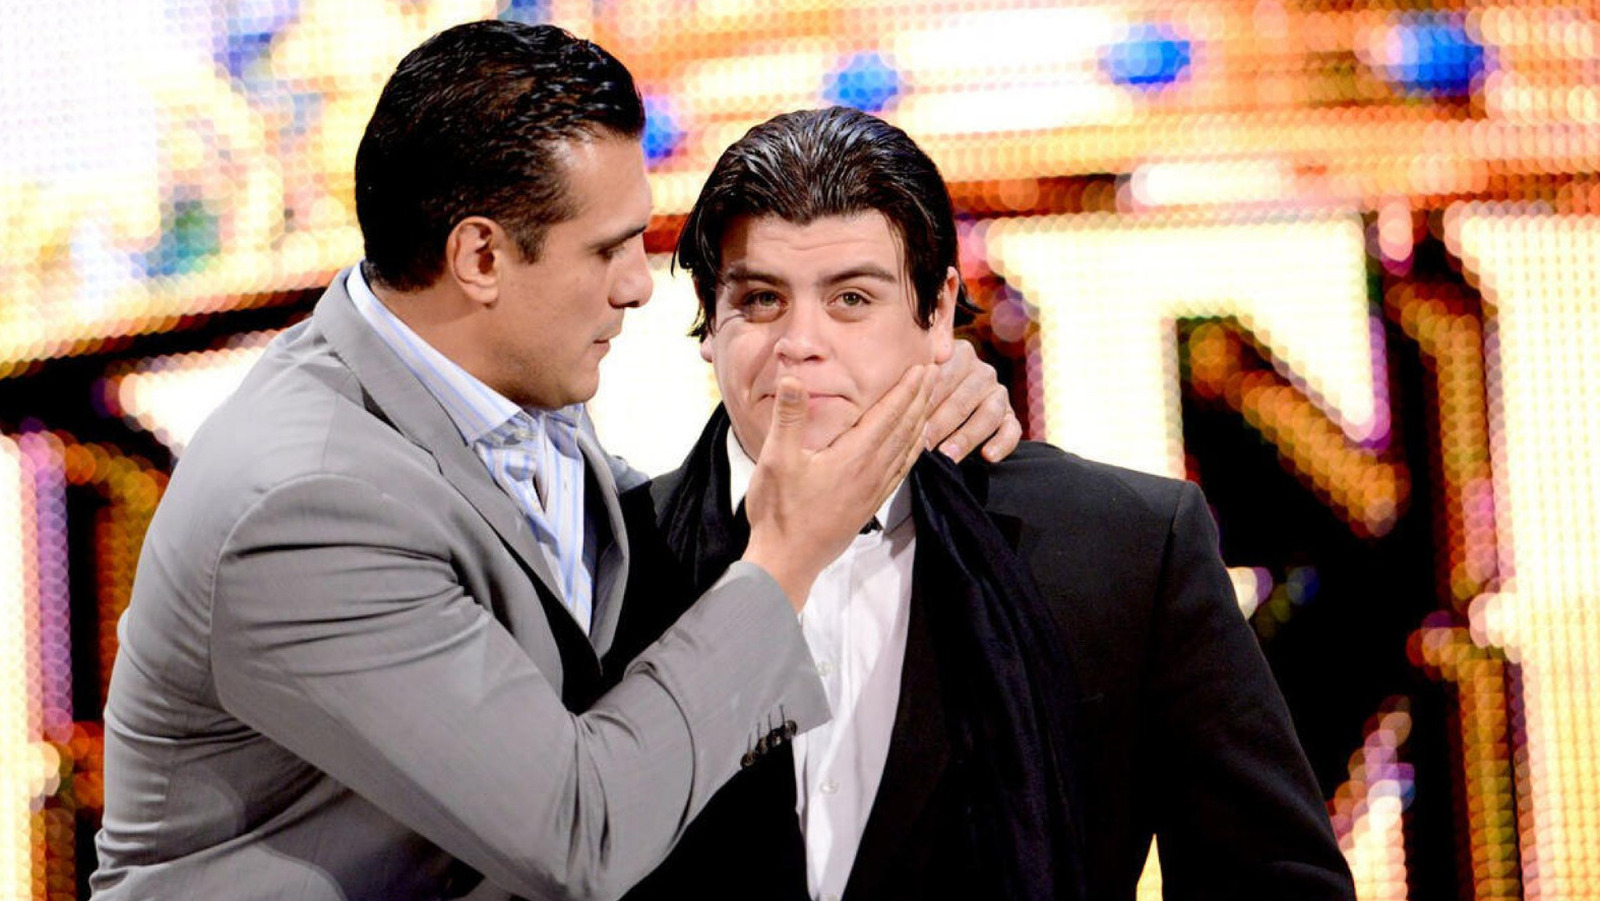 Ricardo Rodríguez recuerda cómo comenzó en la WWE